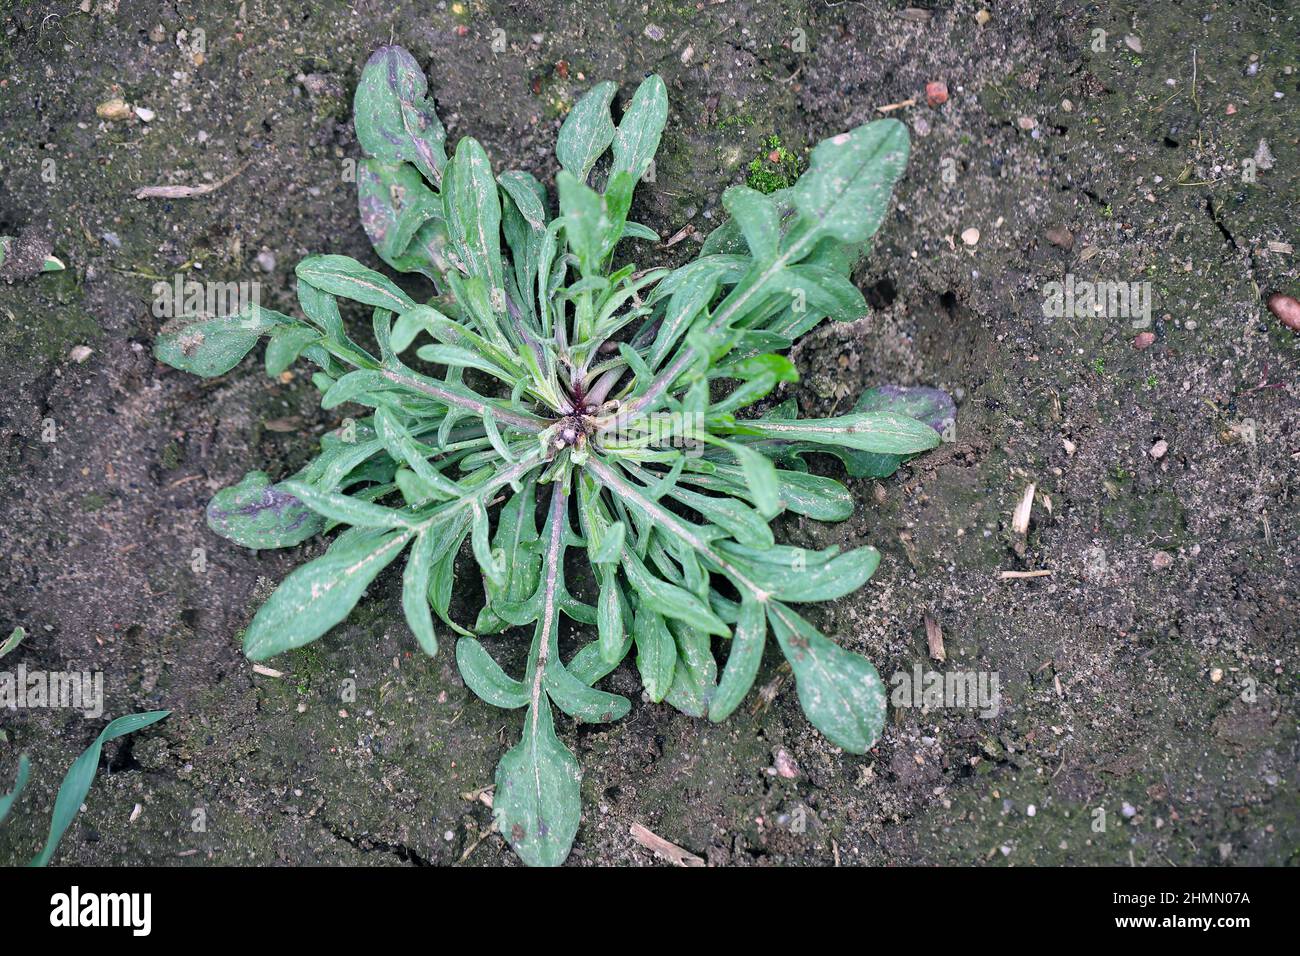 Centaurea cyanus, allgemein bekannt als Kornblume oder Junggesellenknopf. Weit verbreitetes und häufiges Unkraut in landwirtschaftlichen und gartenbaulichen Kulturen. Stockfoto